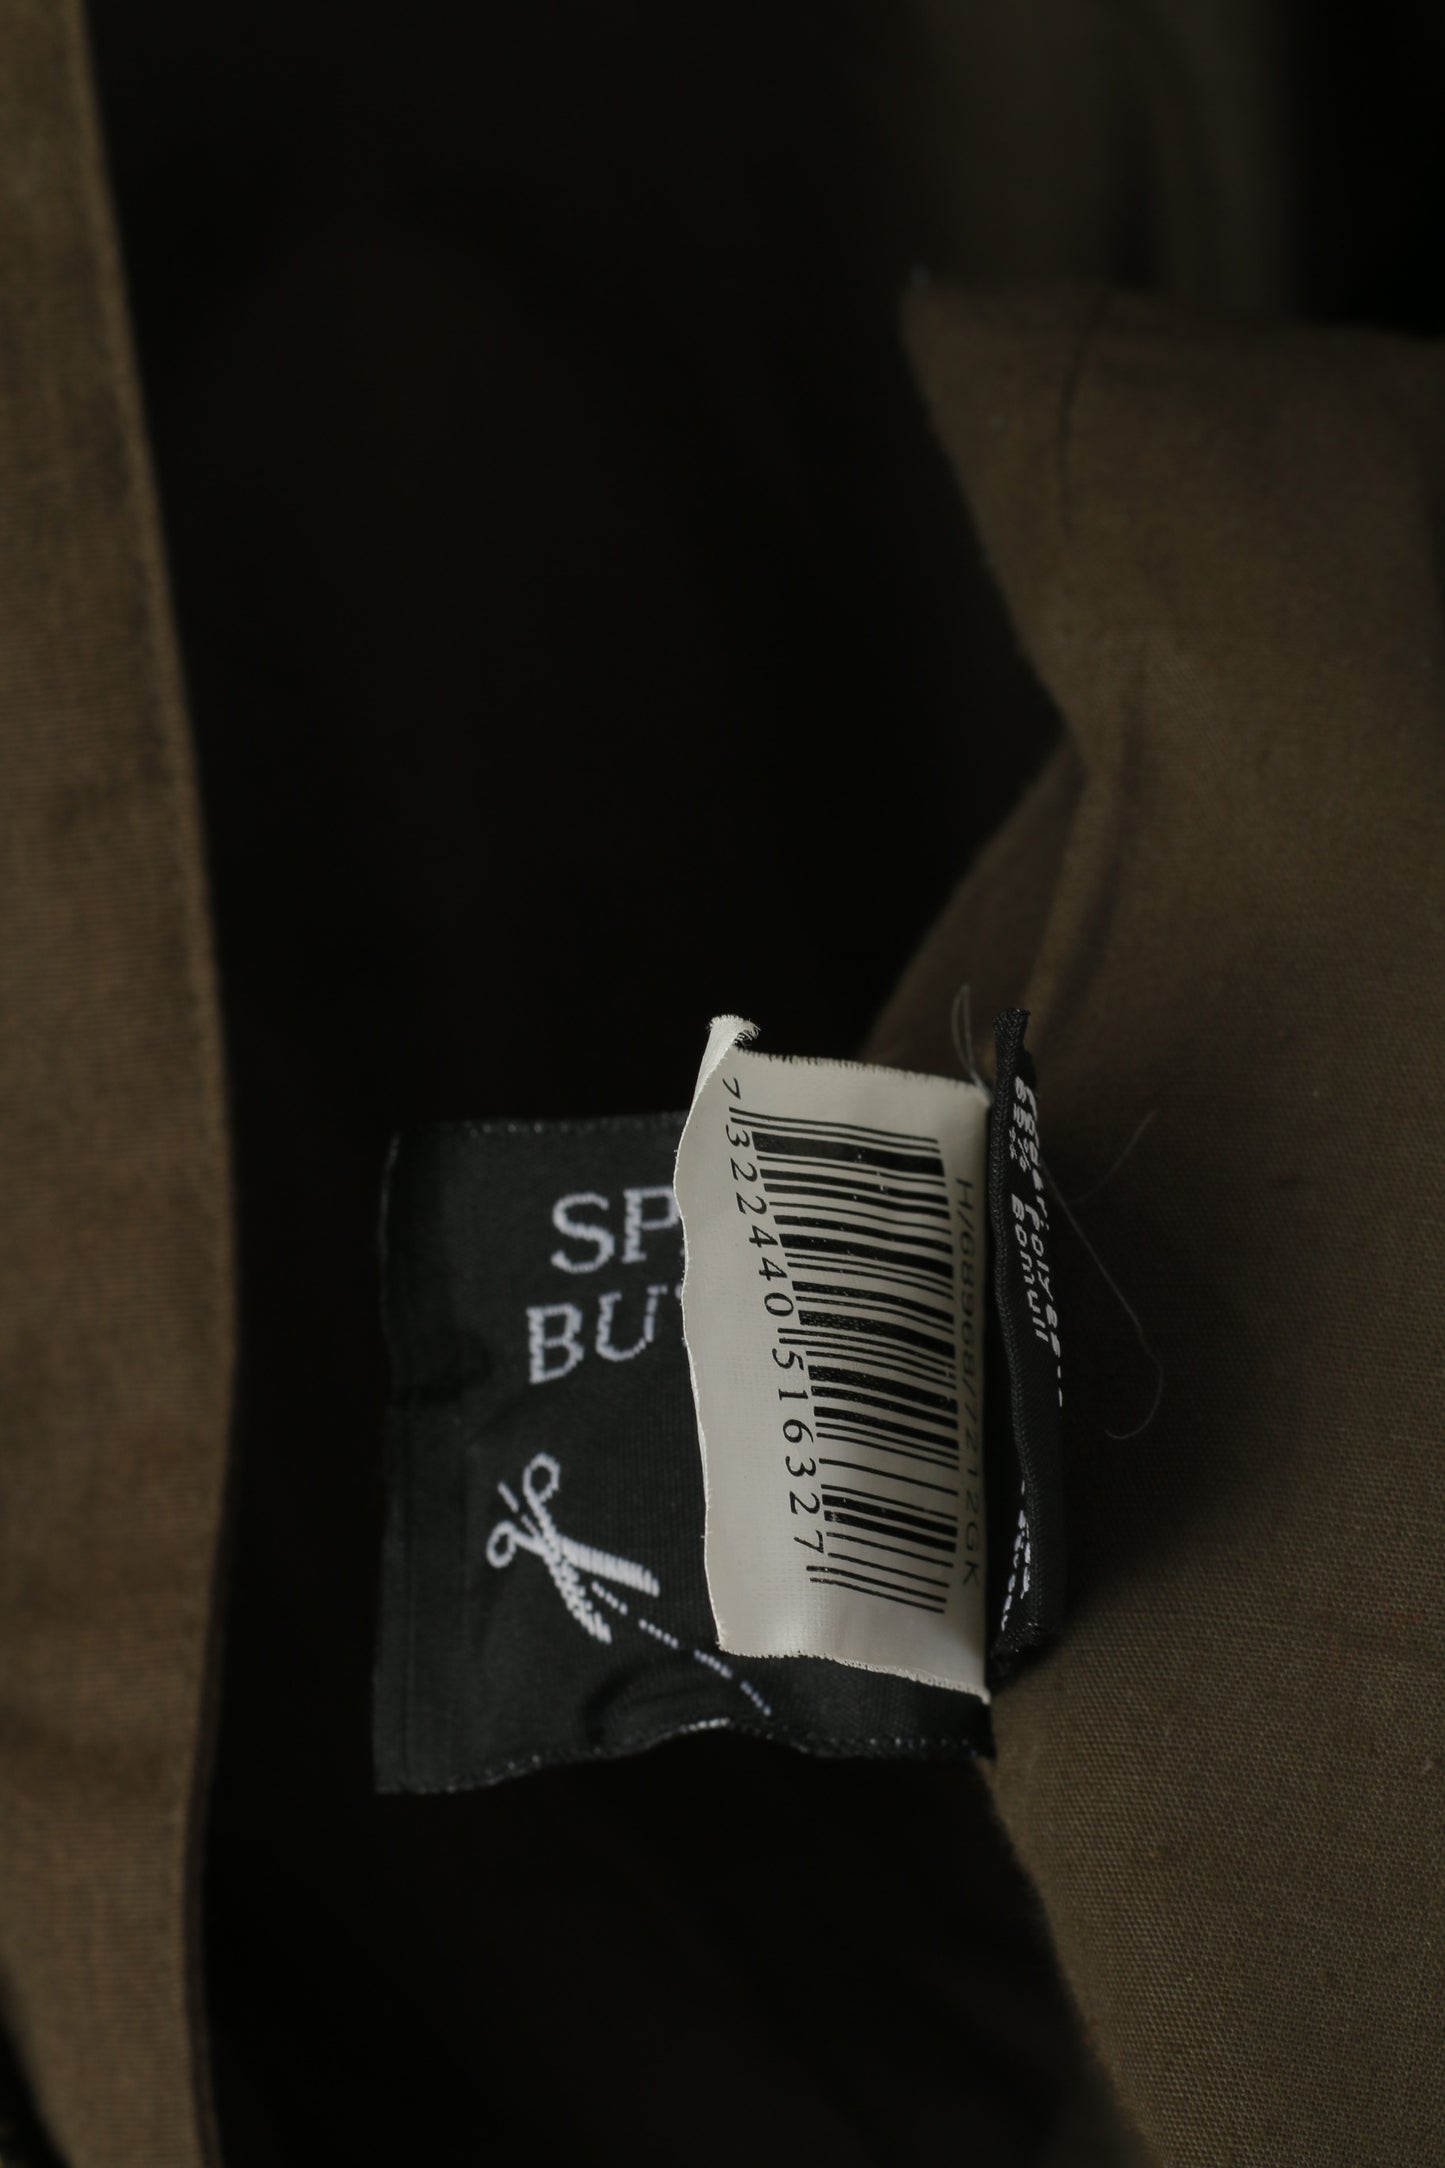 Scott Co. Men L Jacket Green Brown Full Zipper Military Lightweight Cotton Pockets Top